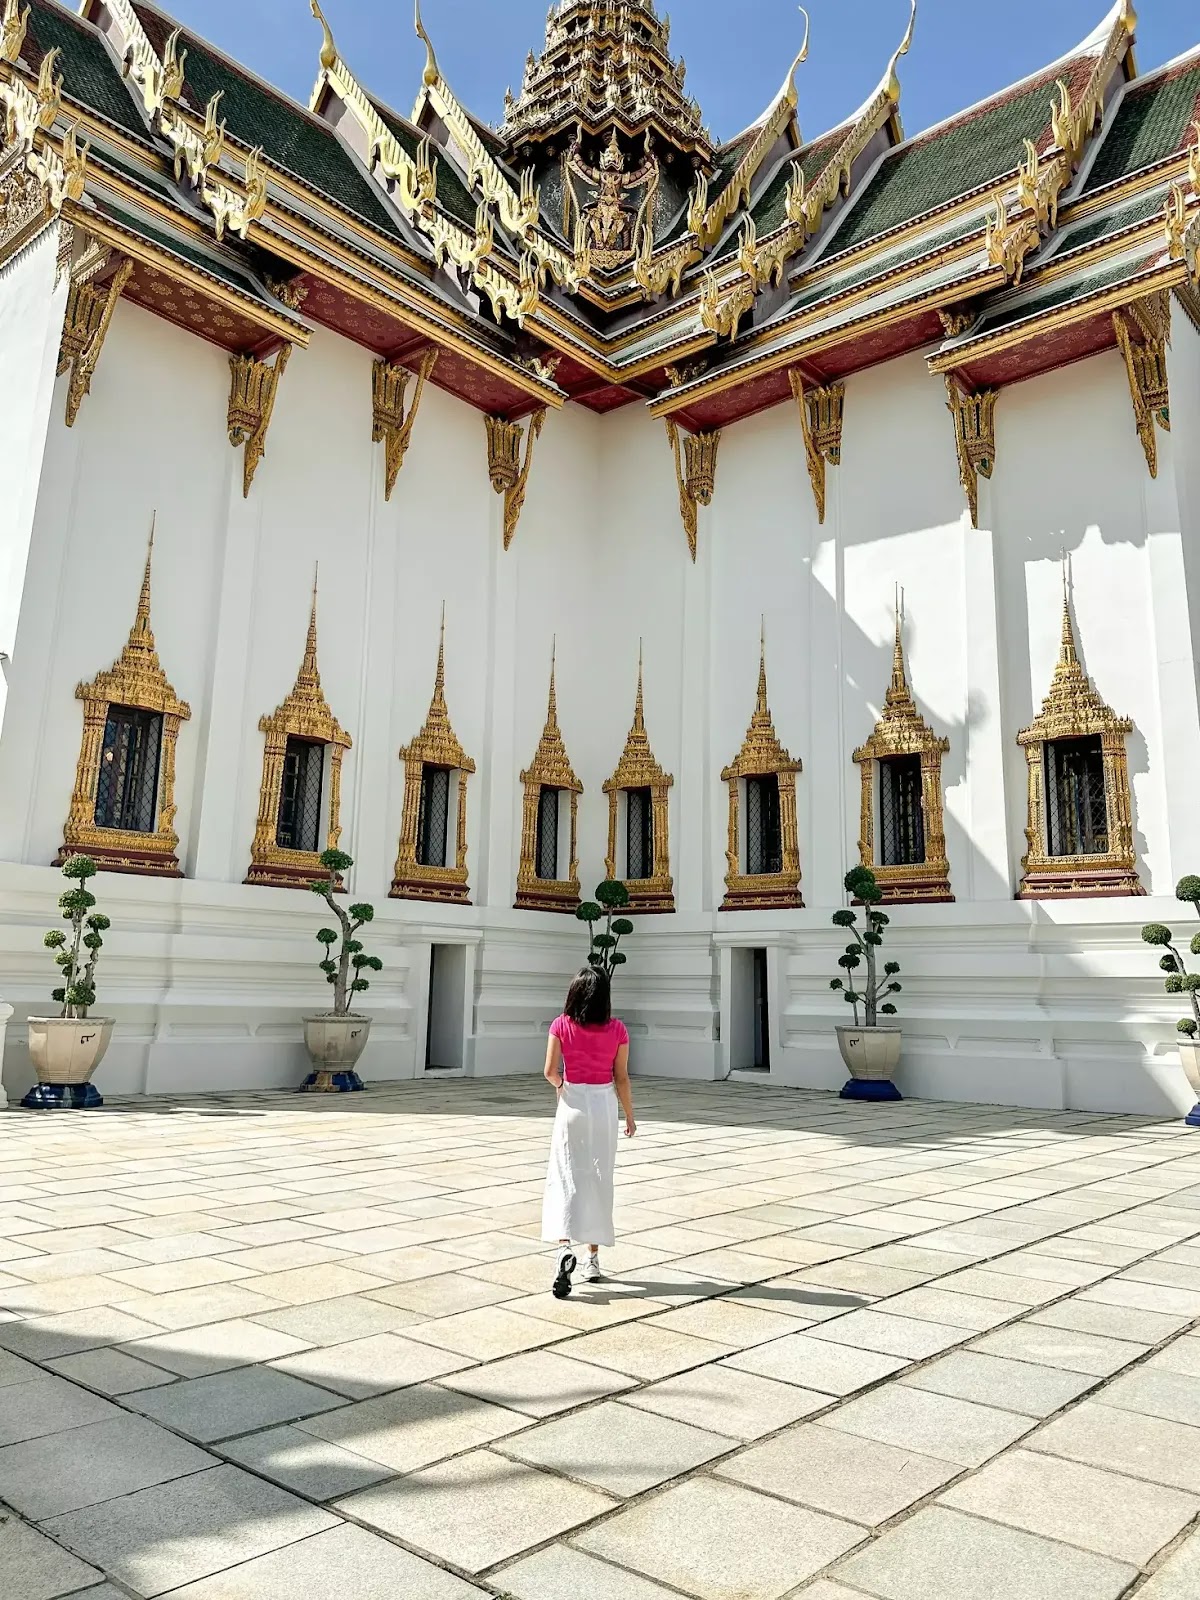 Bangkok Day 2: Temple Run at The Grand Palace, Wat Pho, and Wat Arun